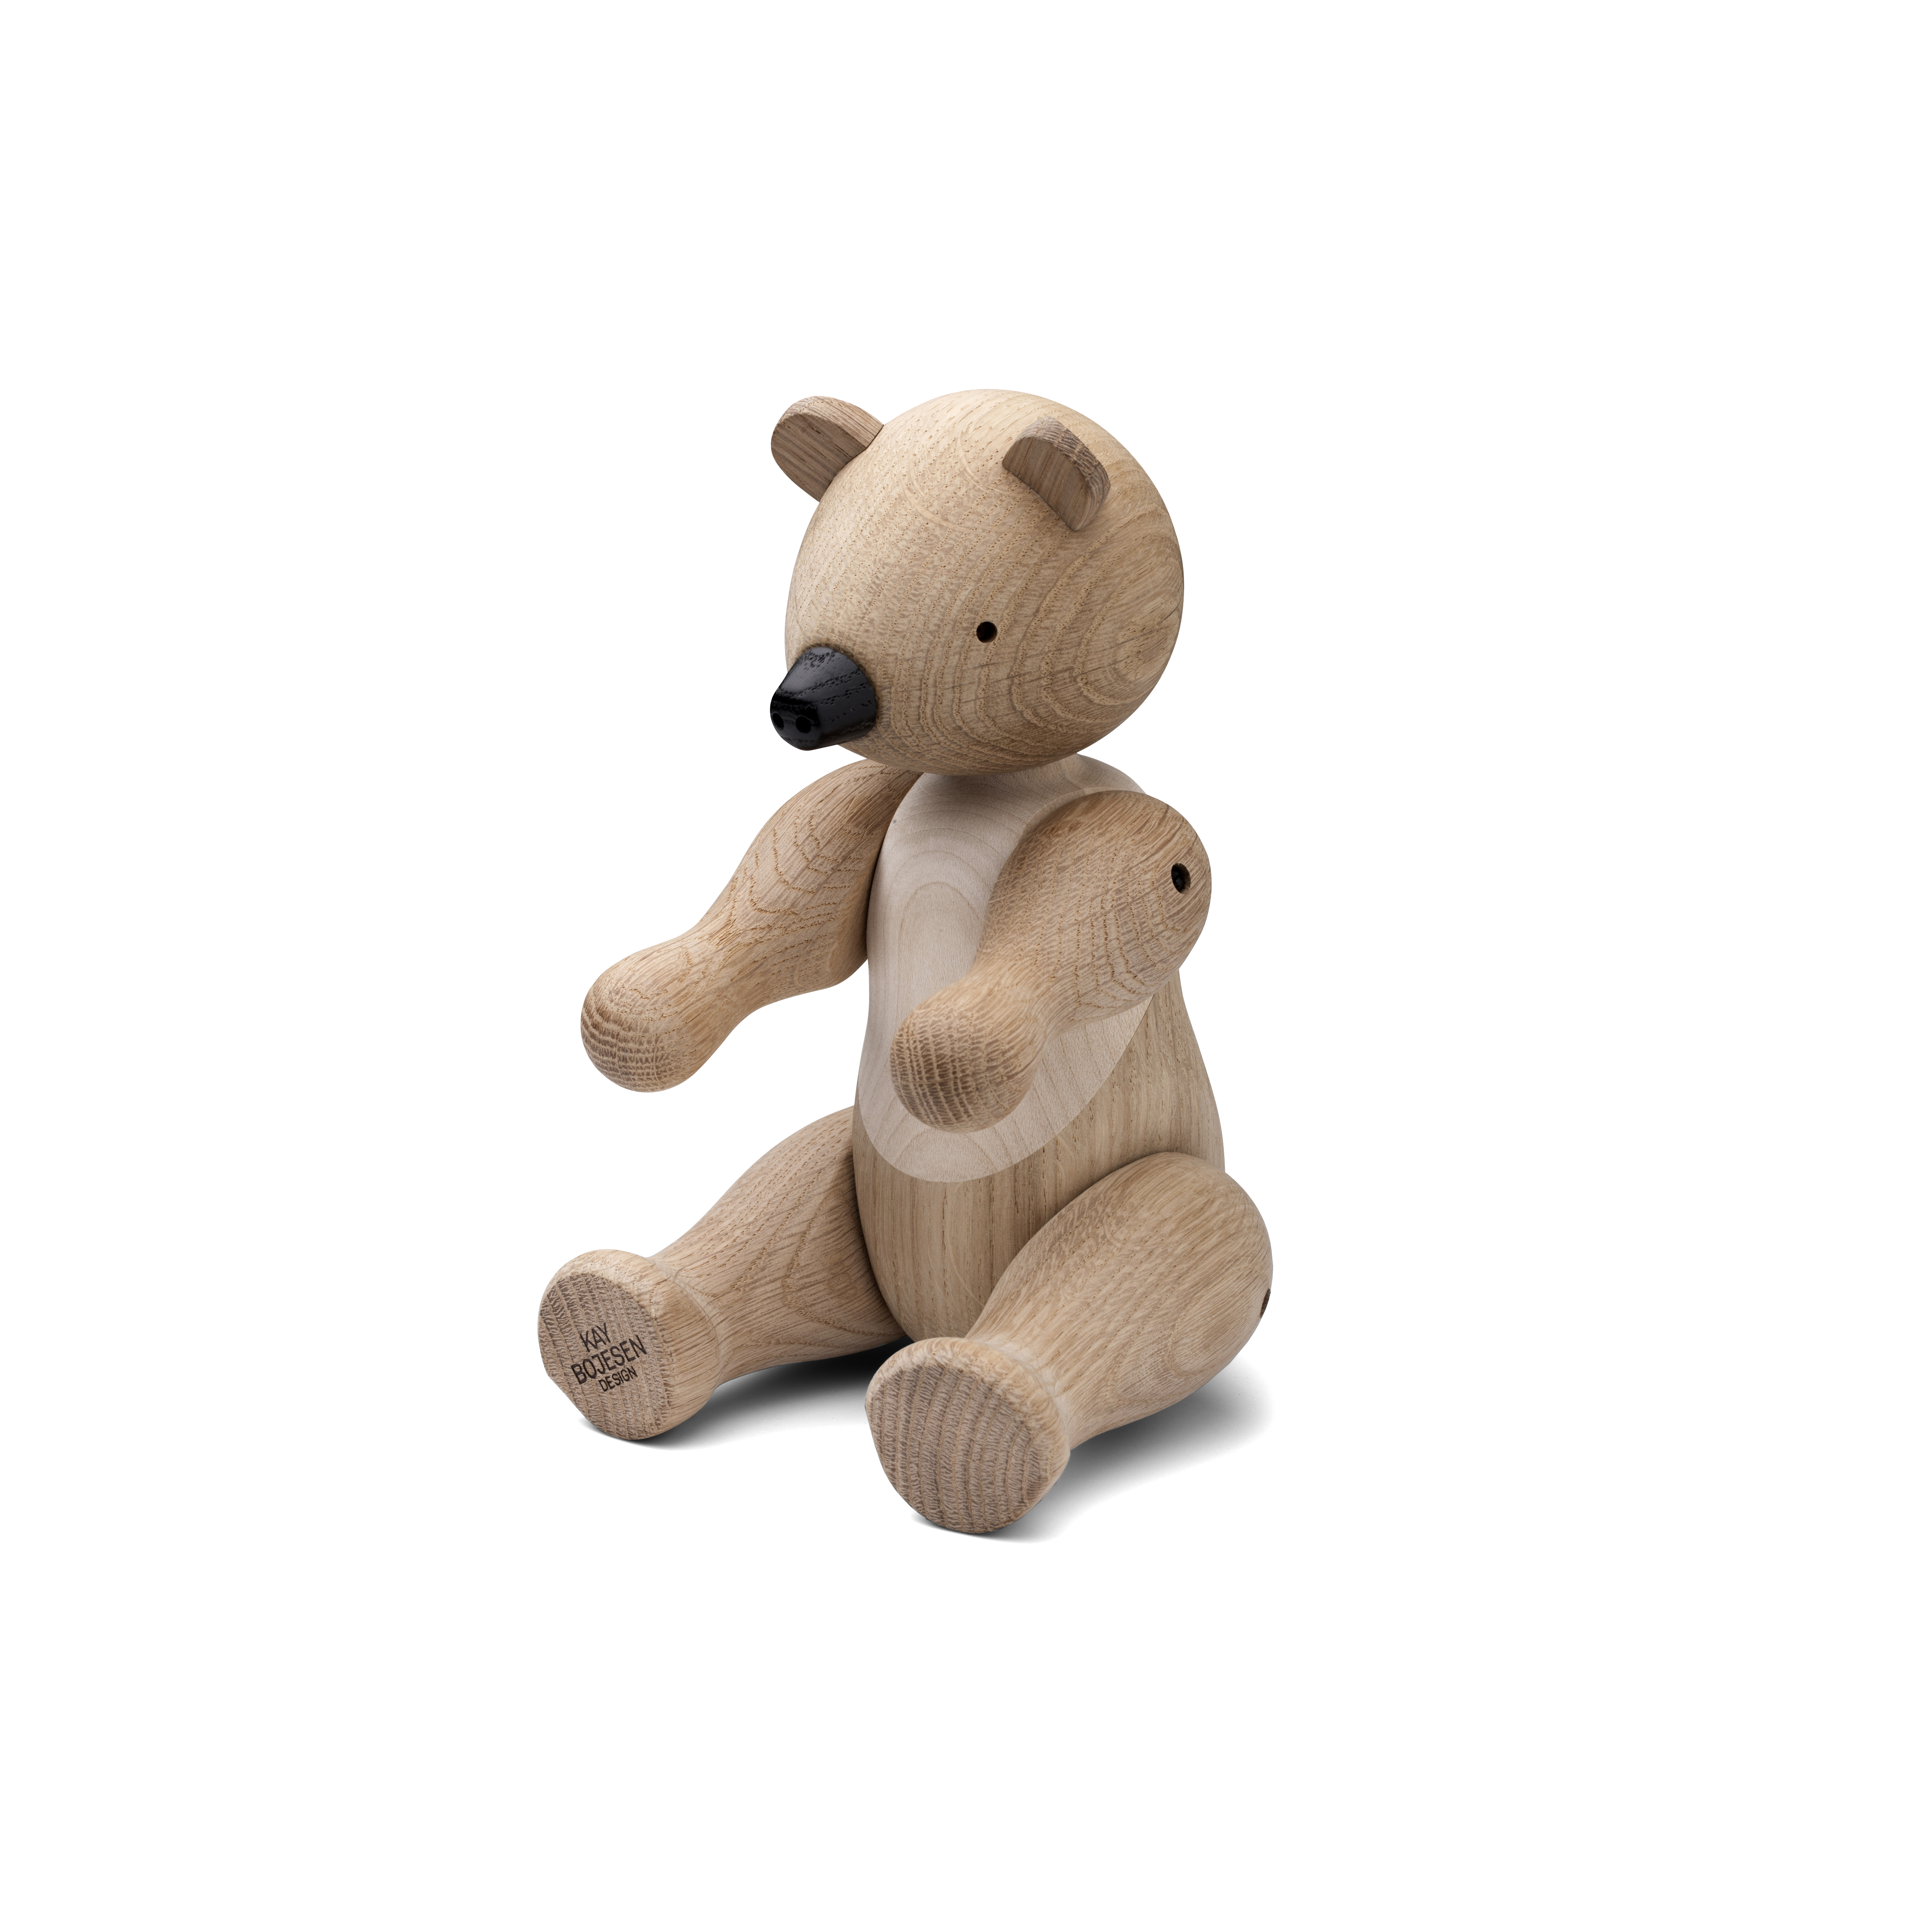 Medium wooden bear